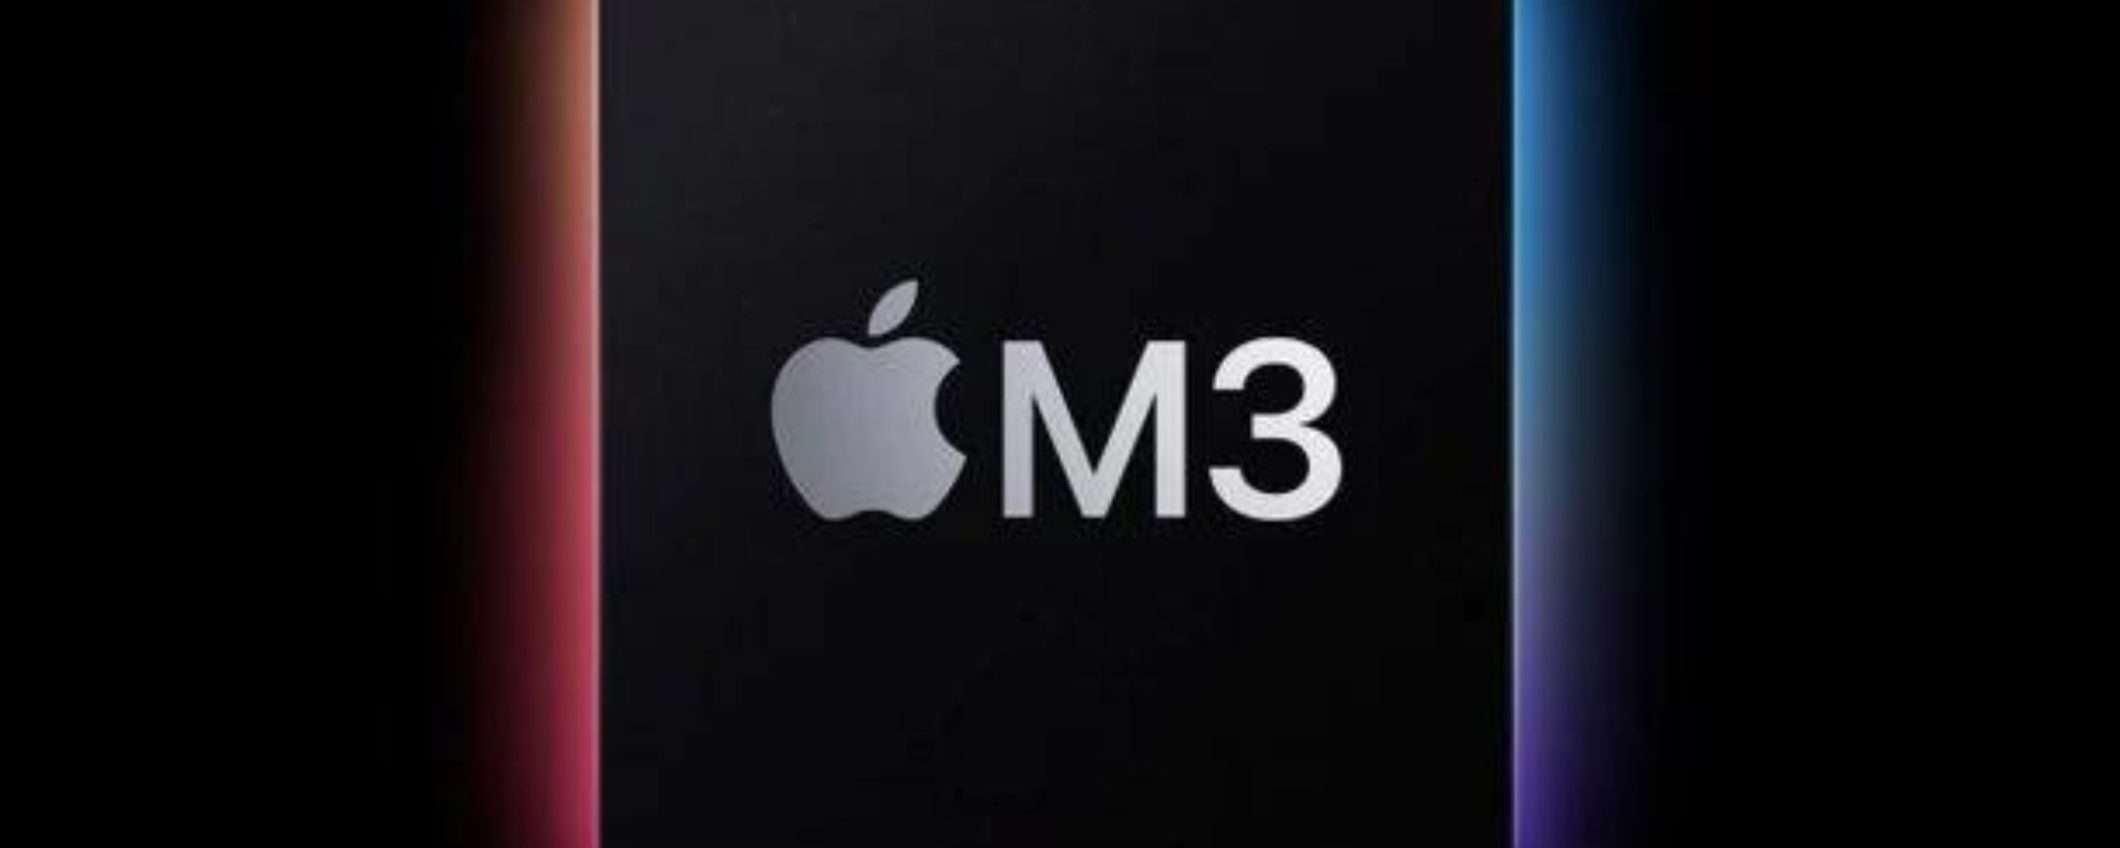 Apple Silicon M3: sarà più potente del chip M2 Pro?